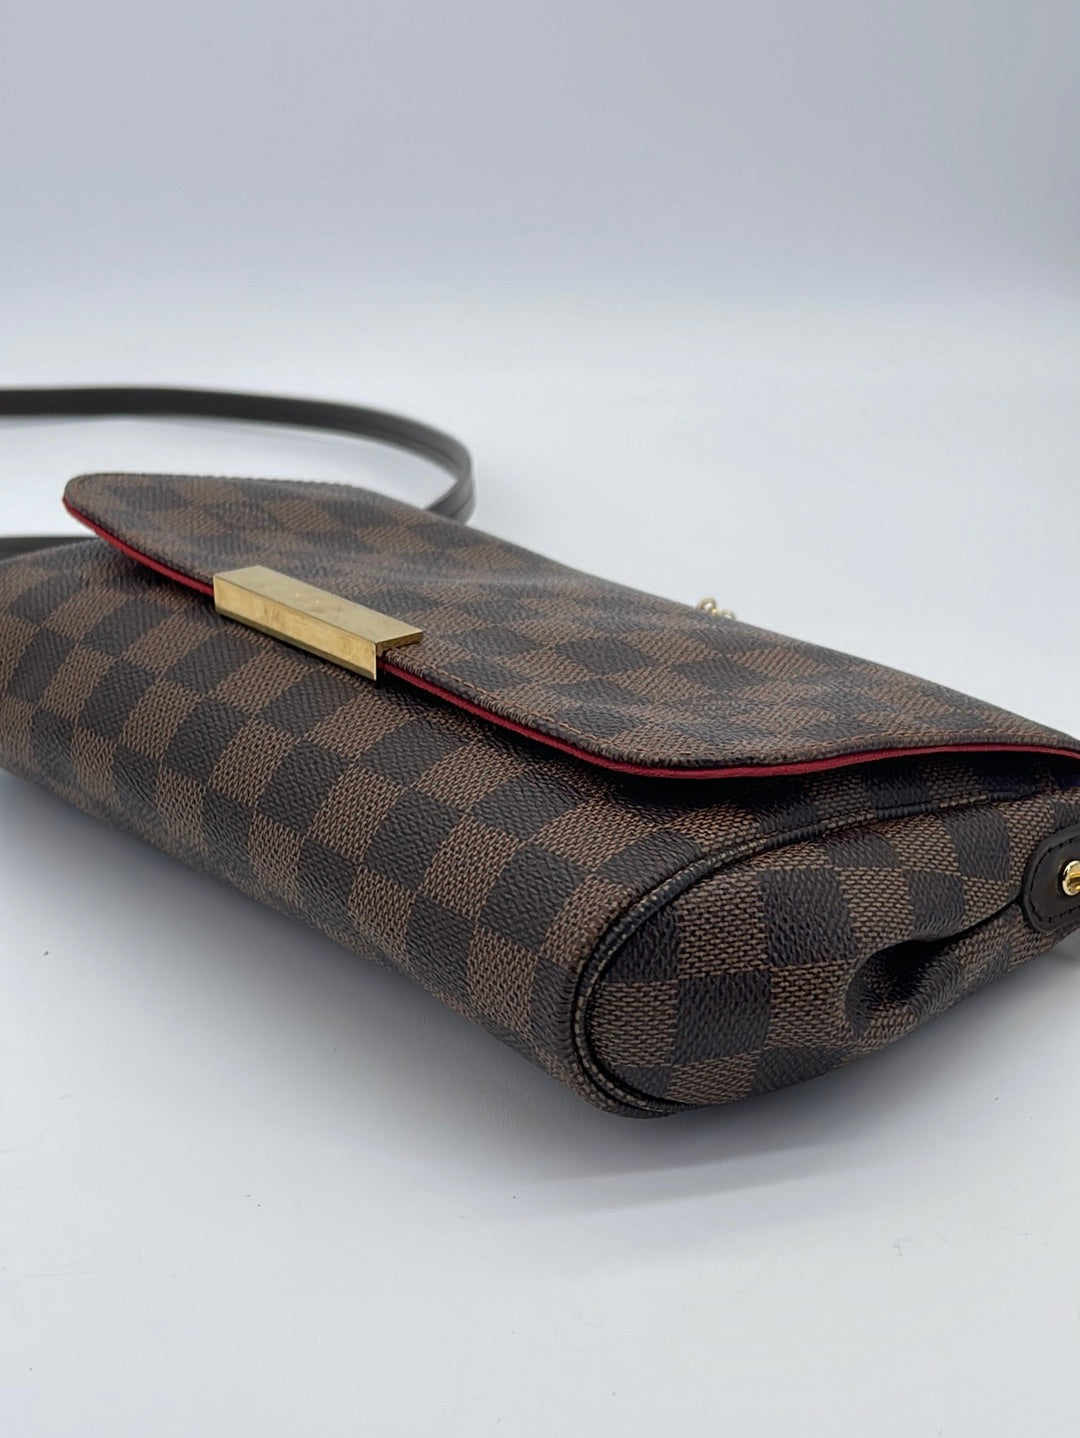 Louis Vuitton Discontinued Monogram Cite MM Shoulder bag 4lv126s